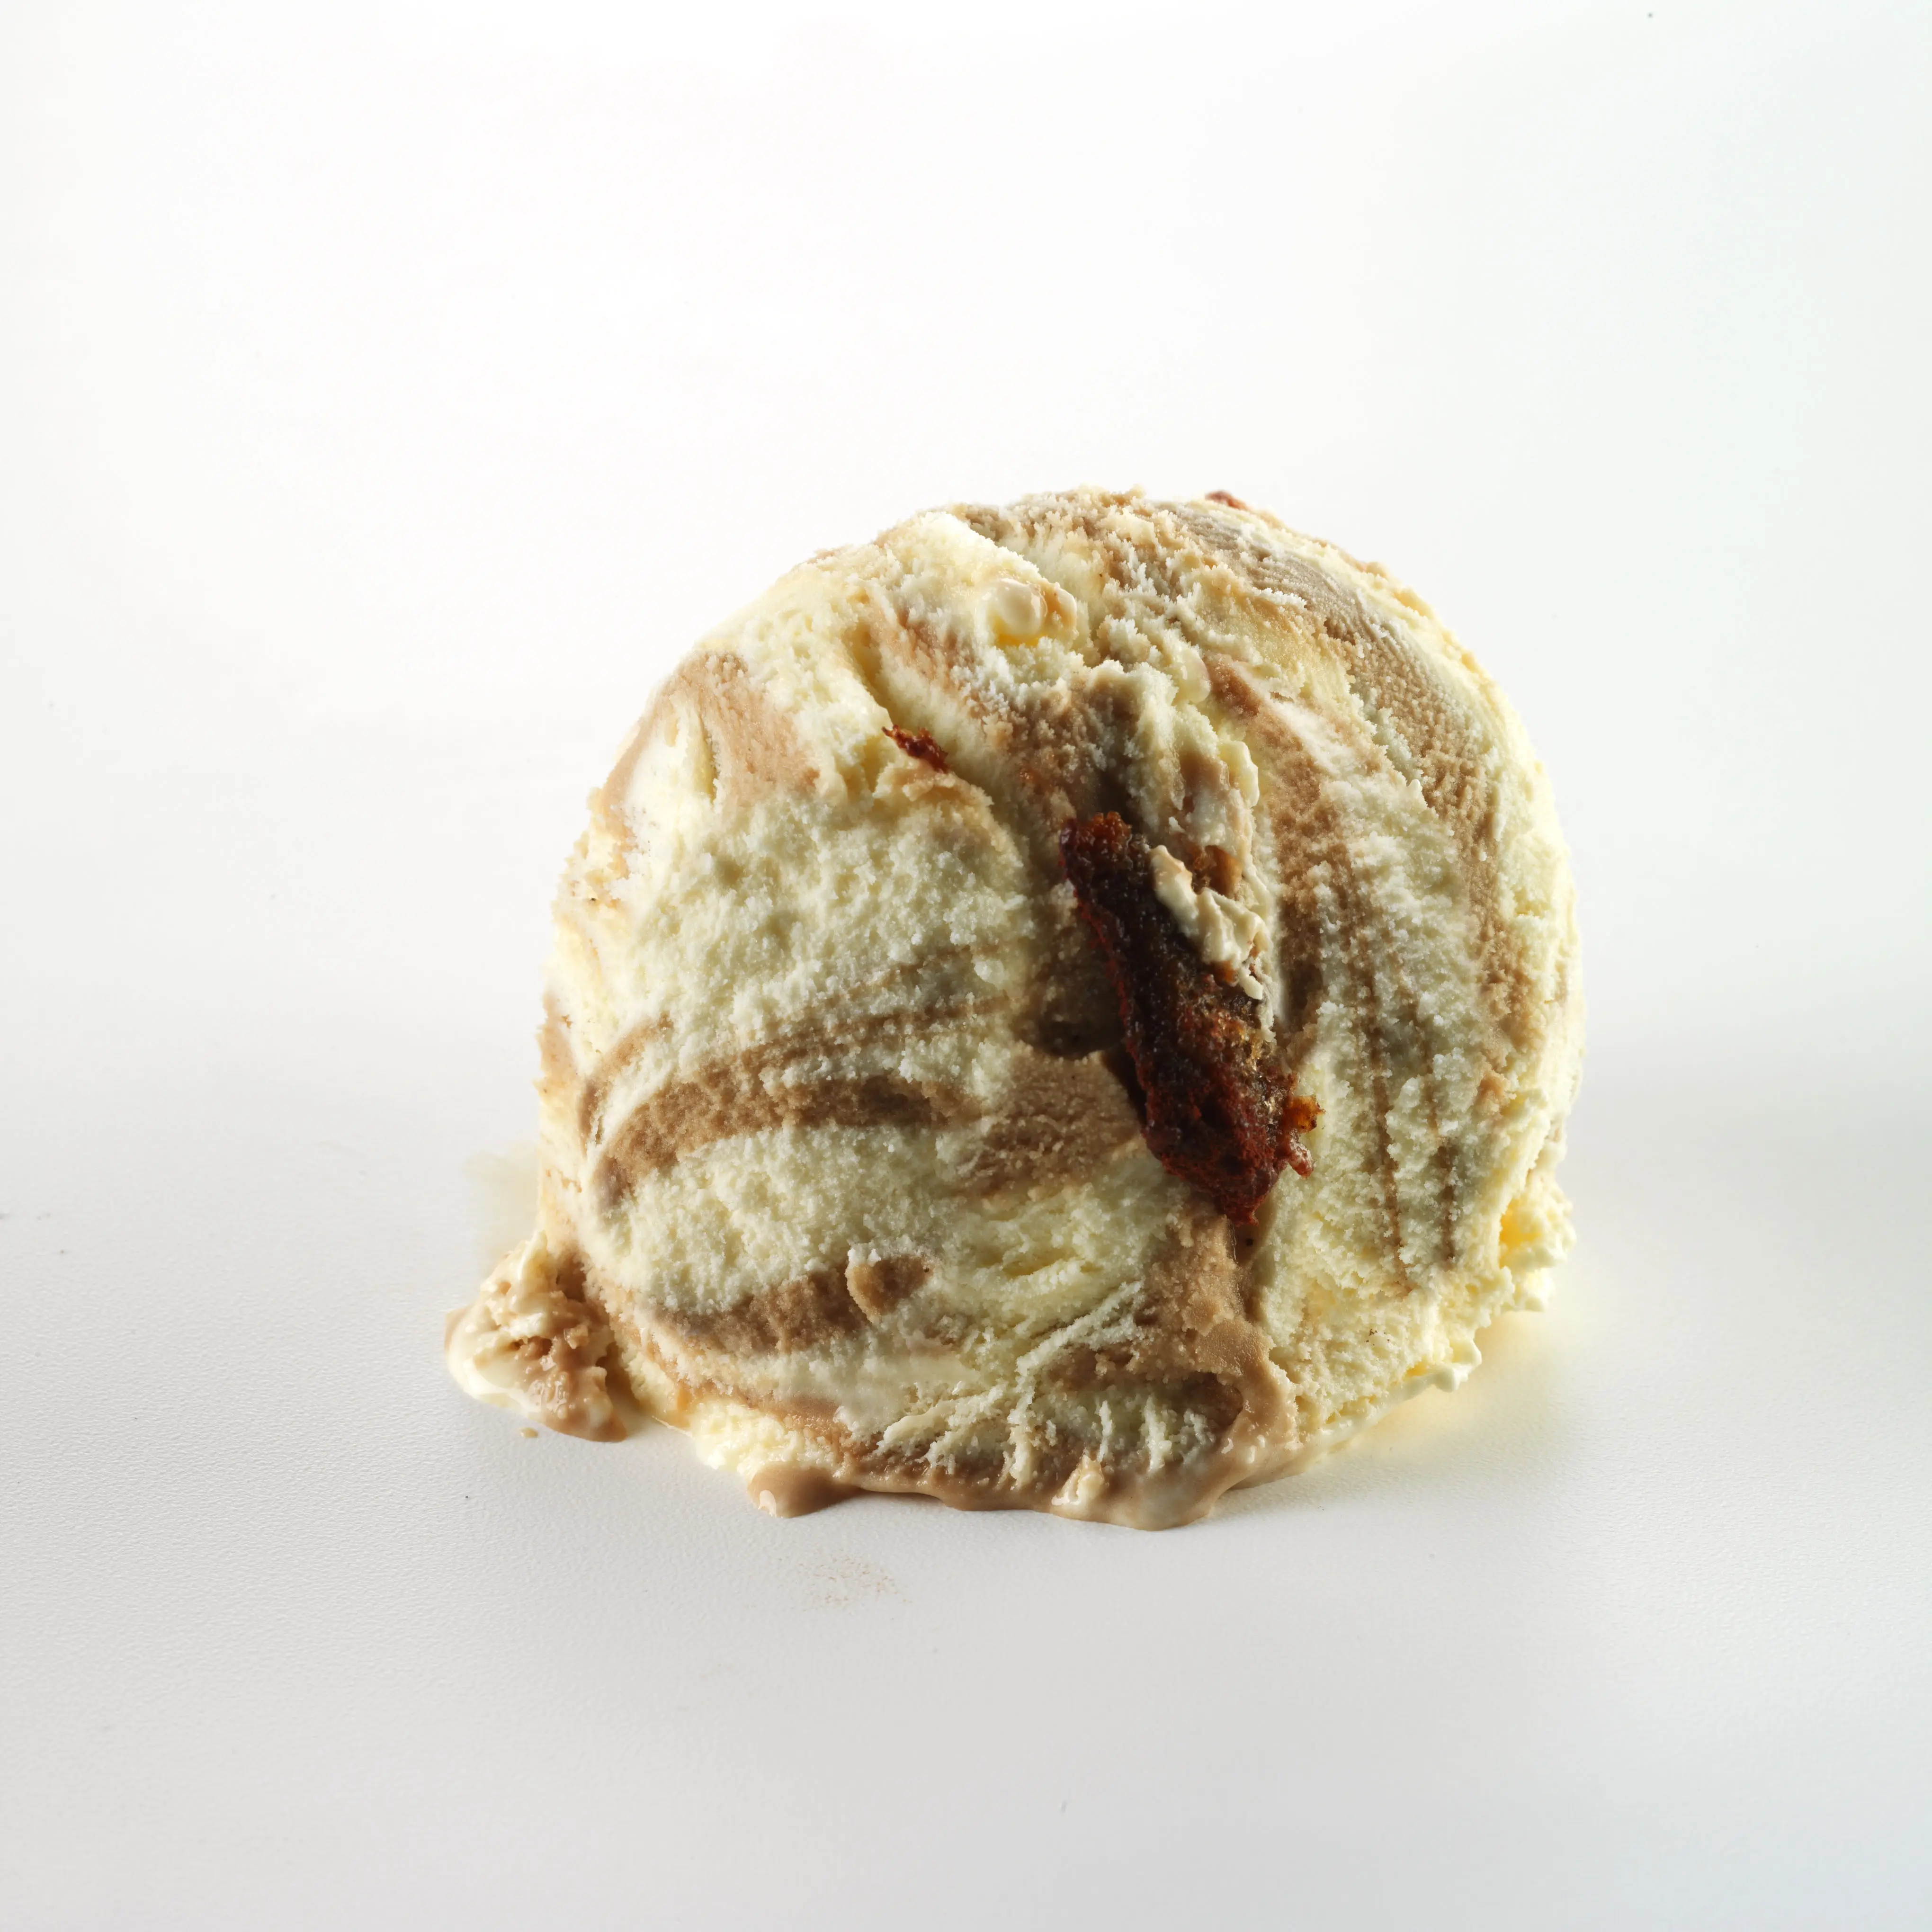 Tiramisu Ice cream - Gelato - Made in Italy - 5Lt tub - for HORECA and ICE CREAM SHOP